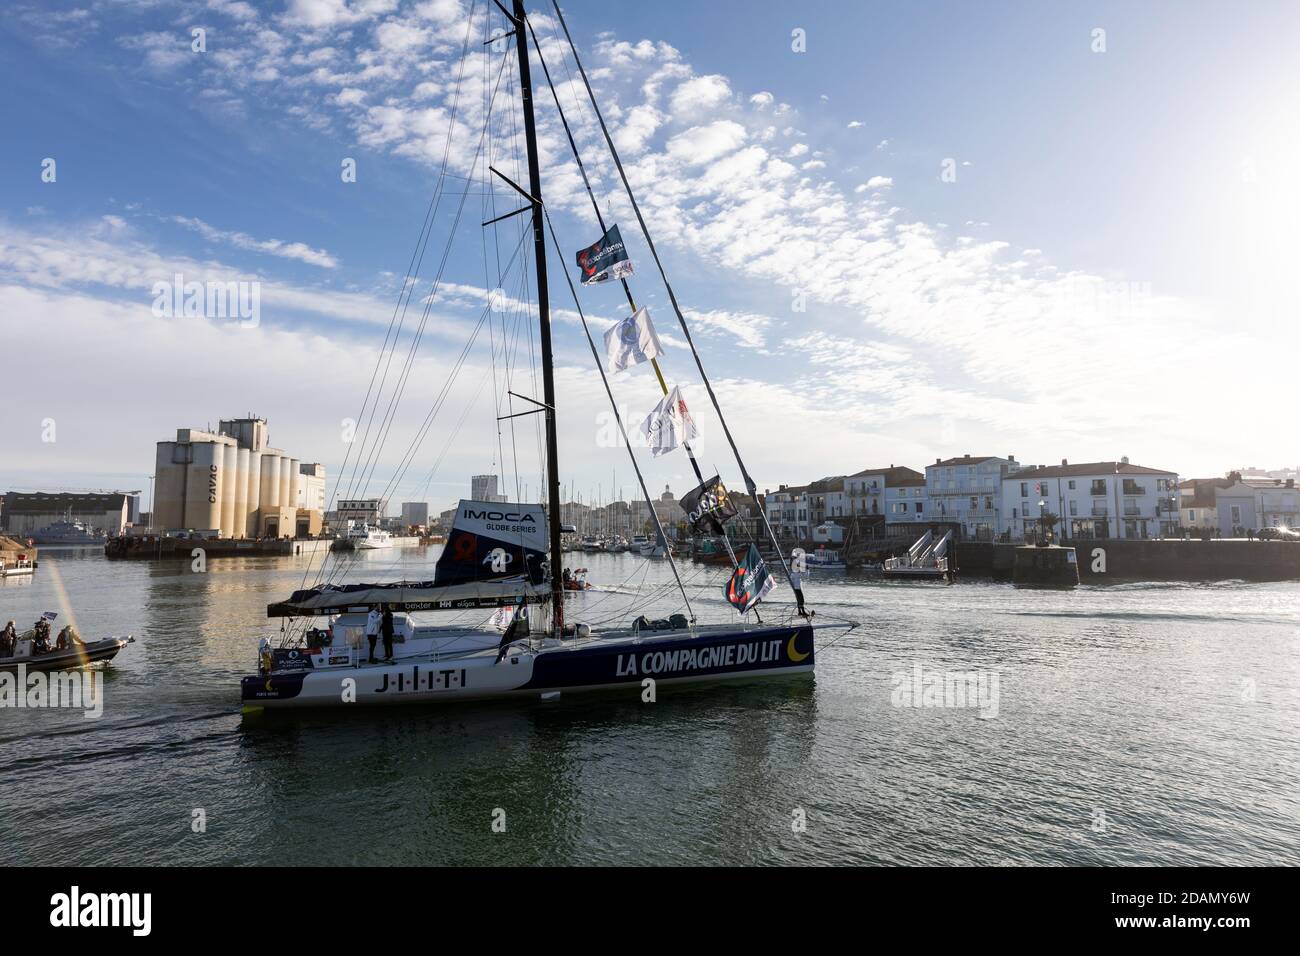 LES SABLES d'OLONNE, FRANCE - 08 NOVEMBRE 2020 : bateau Clément Giraud ( Compagnie du lit - Jiliti) dans le canal pour le début du Vendee Globe 2020  Photo Stock - Alamy